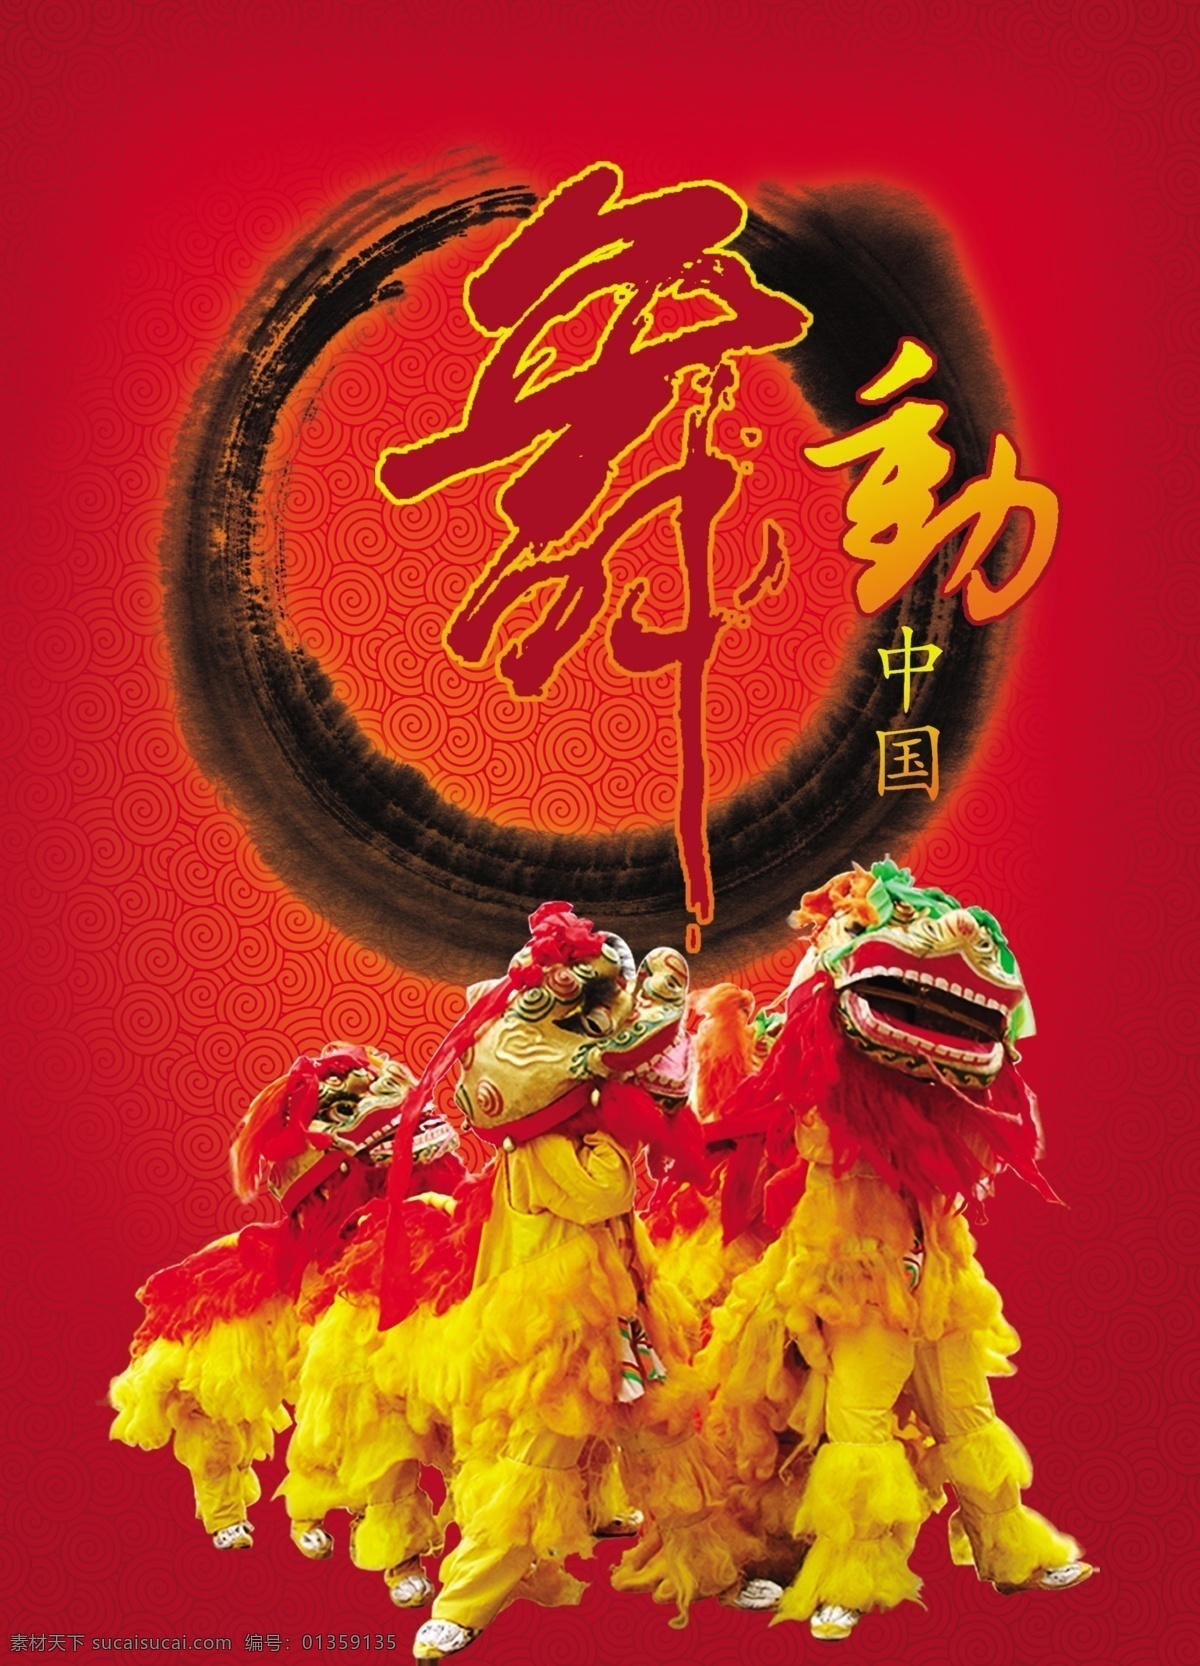 舞动中国 舞狮 祥云底纹 水墨纹丝 中国红 礼品包装盒 文化艺术 舞蹈音乐